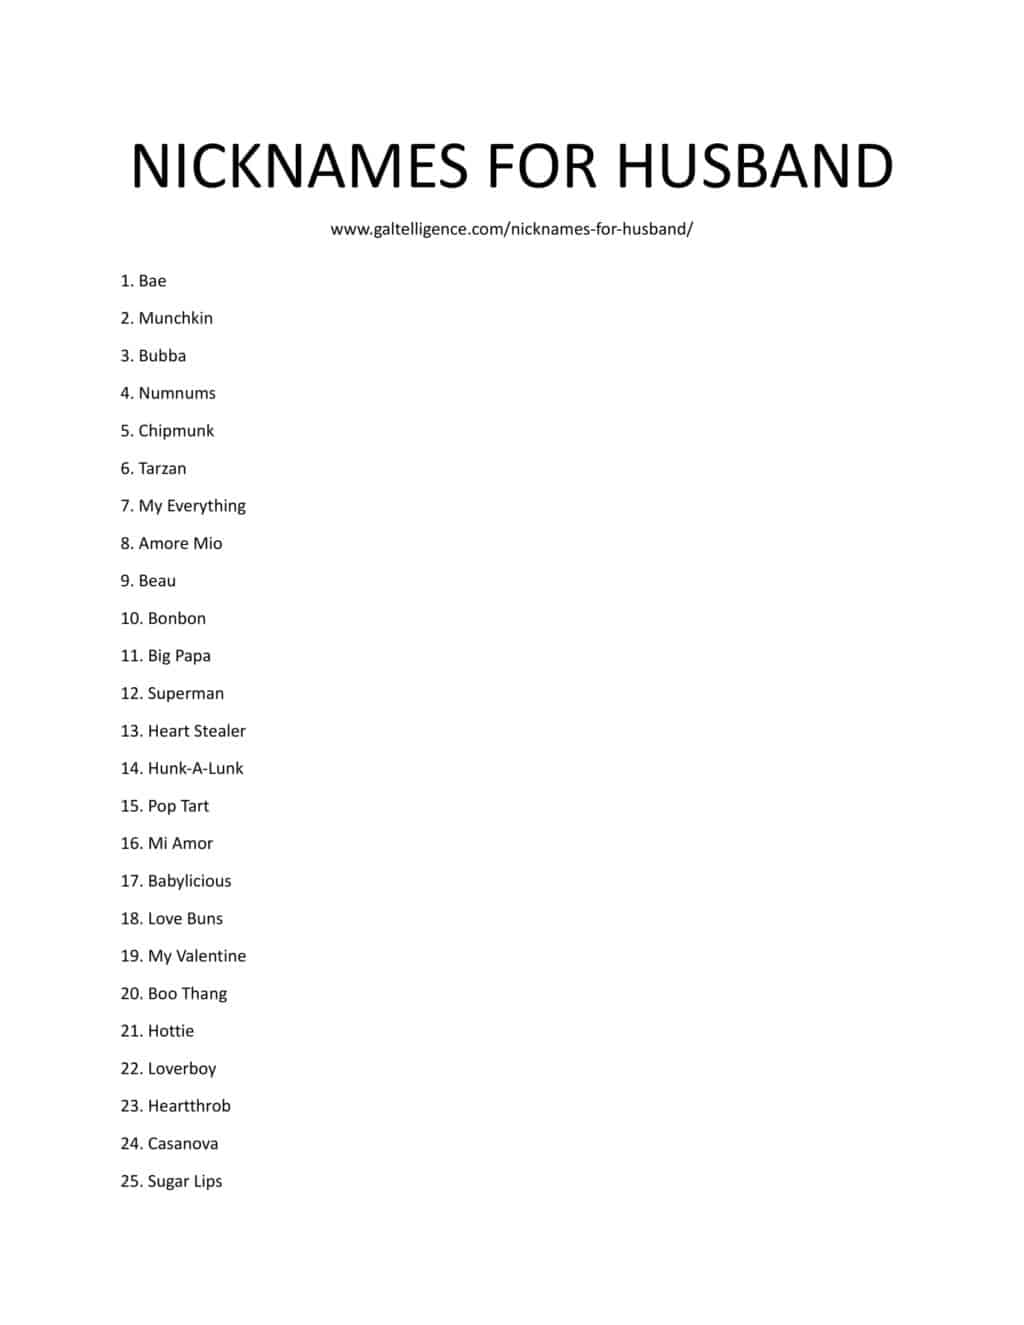 Downloadable and Printable list of Nicknames